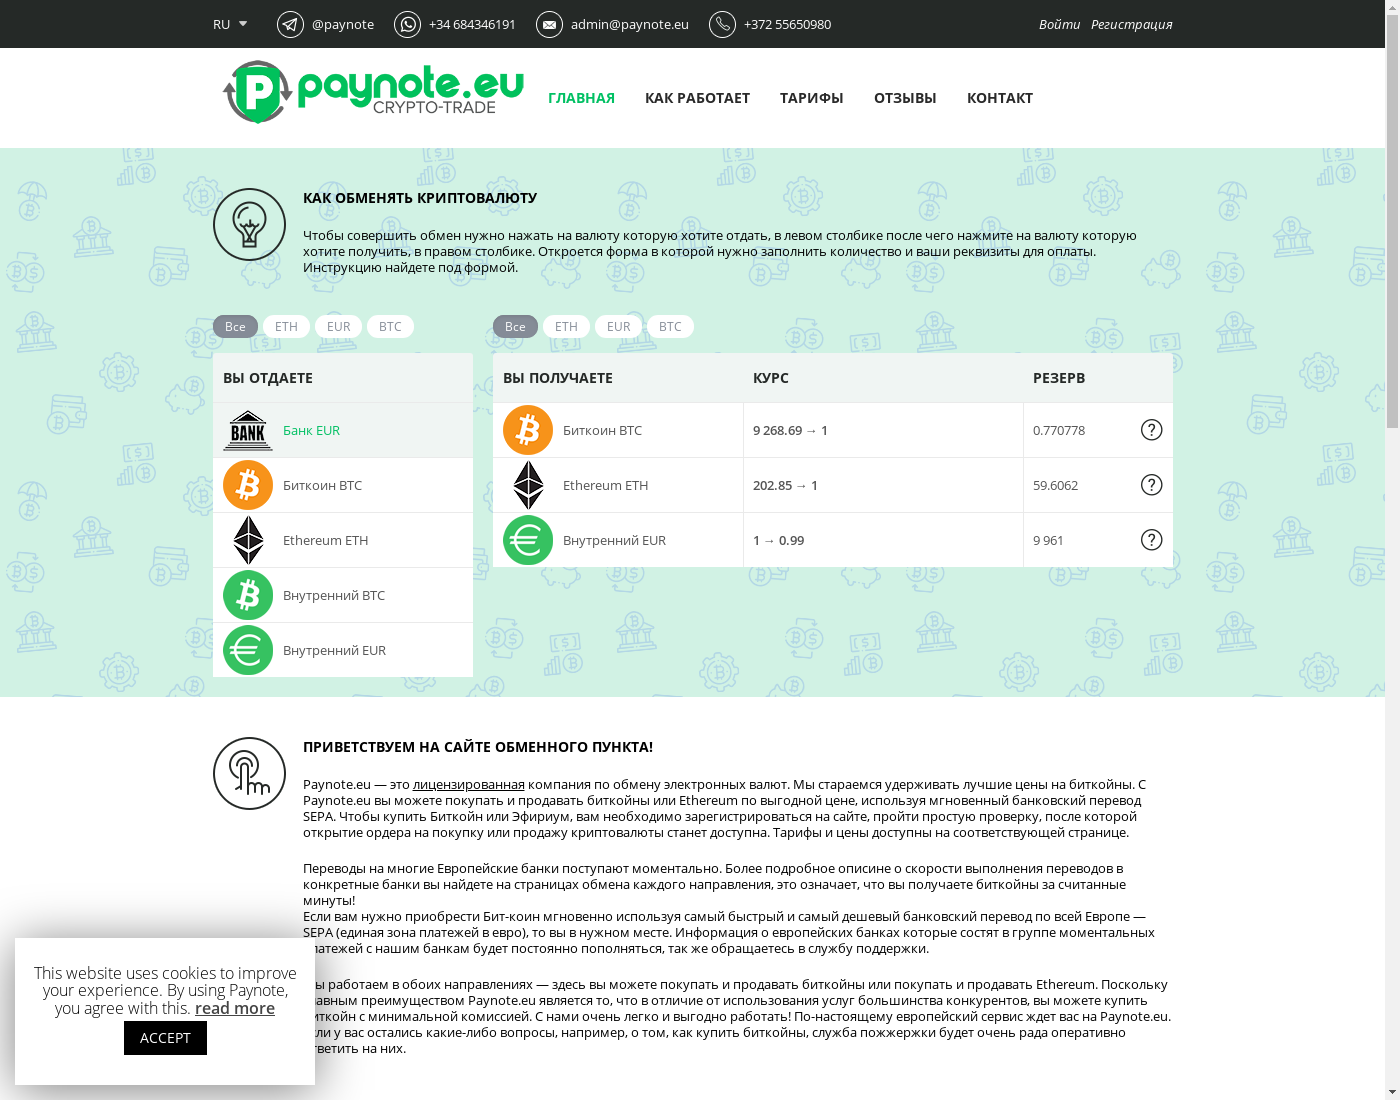 Paynote интерфейс пользователя: домашняя страничка на языке — Русский